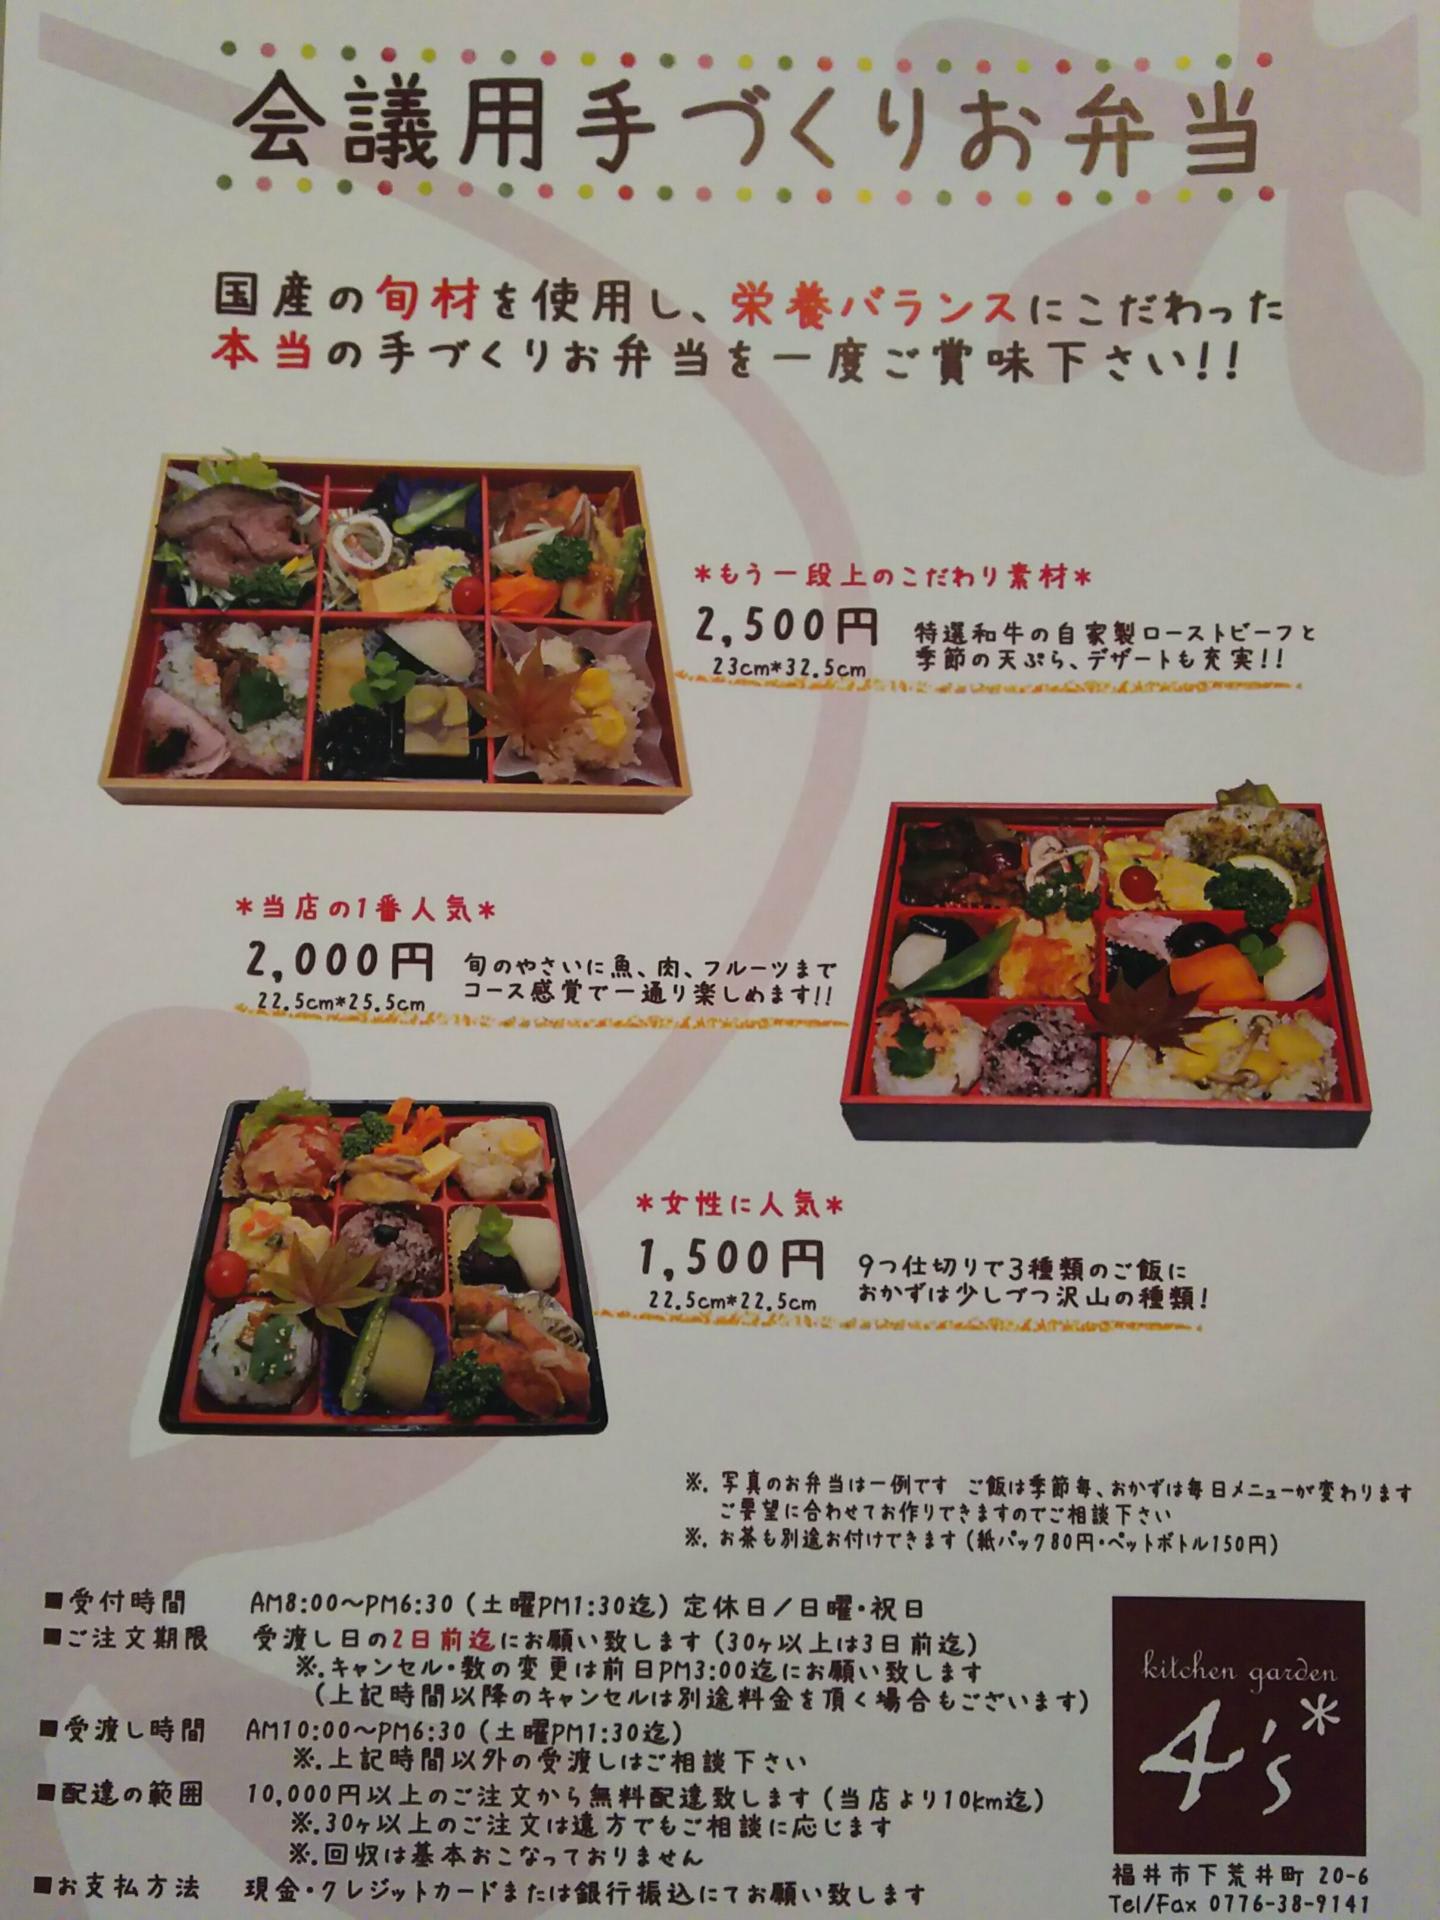 お弁当チラシ1500円 2500円 お弁当 惣菜店 Kitchen Garden ４ S キッチンガーデン ヨンズ